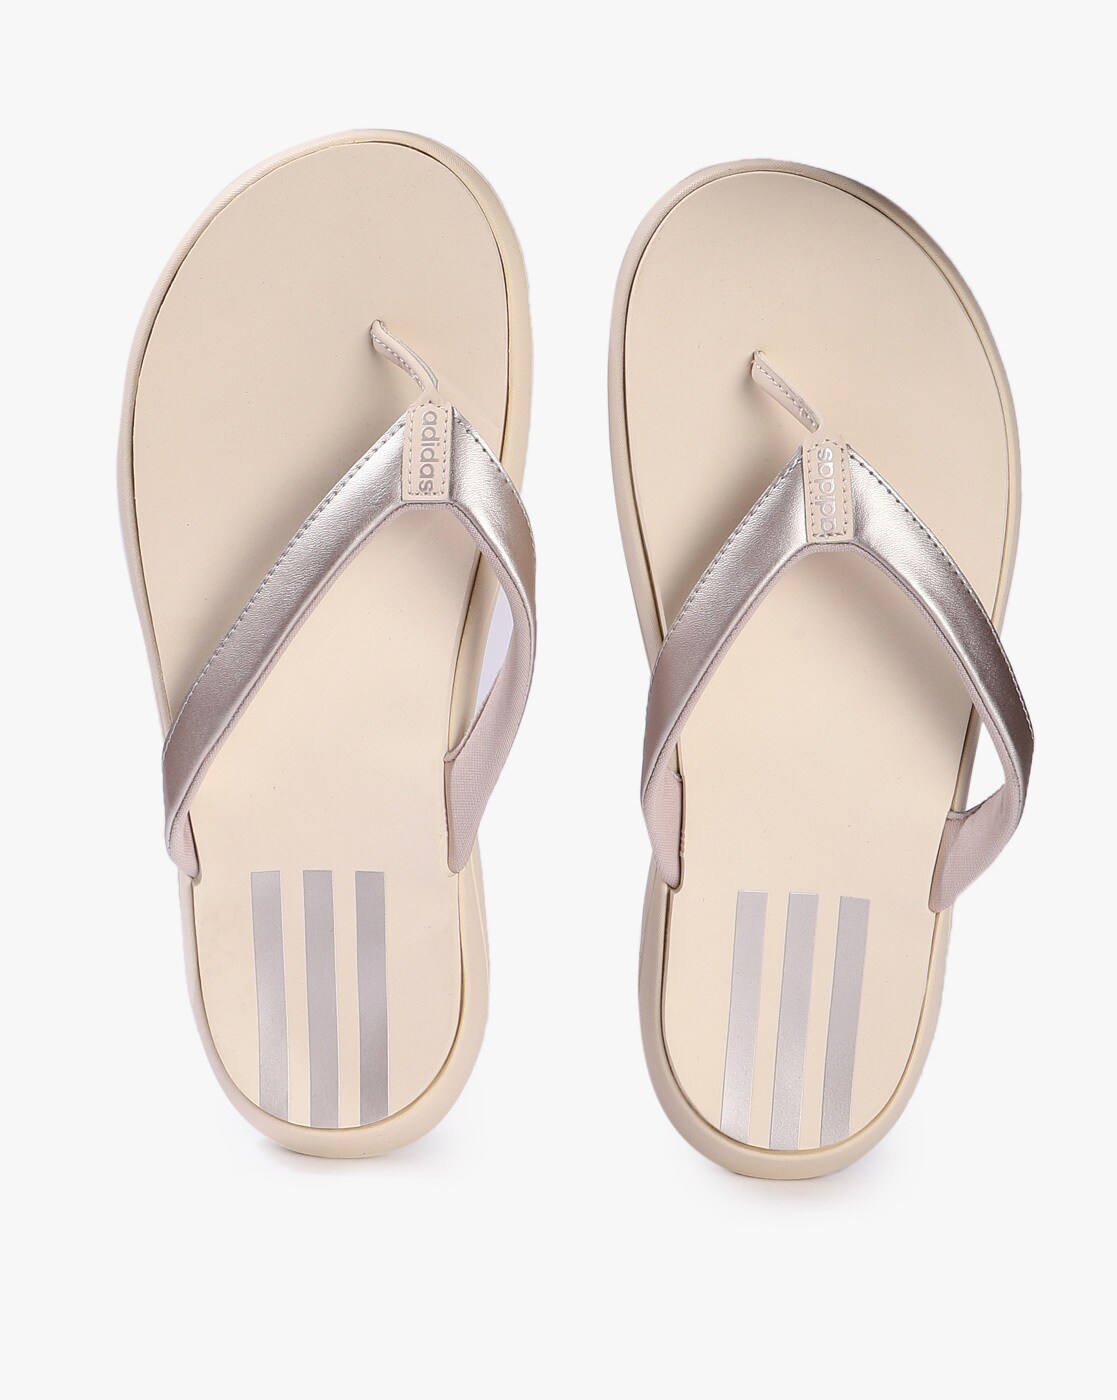 adidas comfort women's flip flop sandals